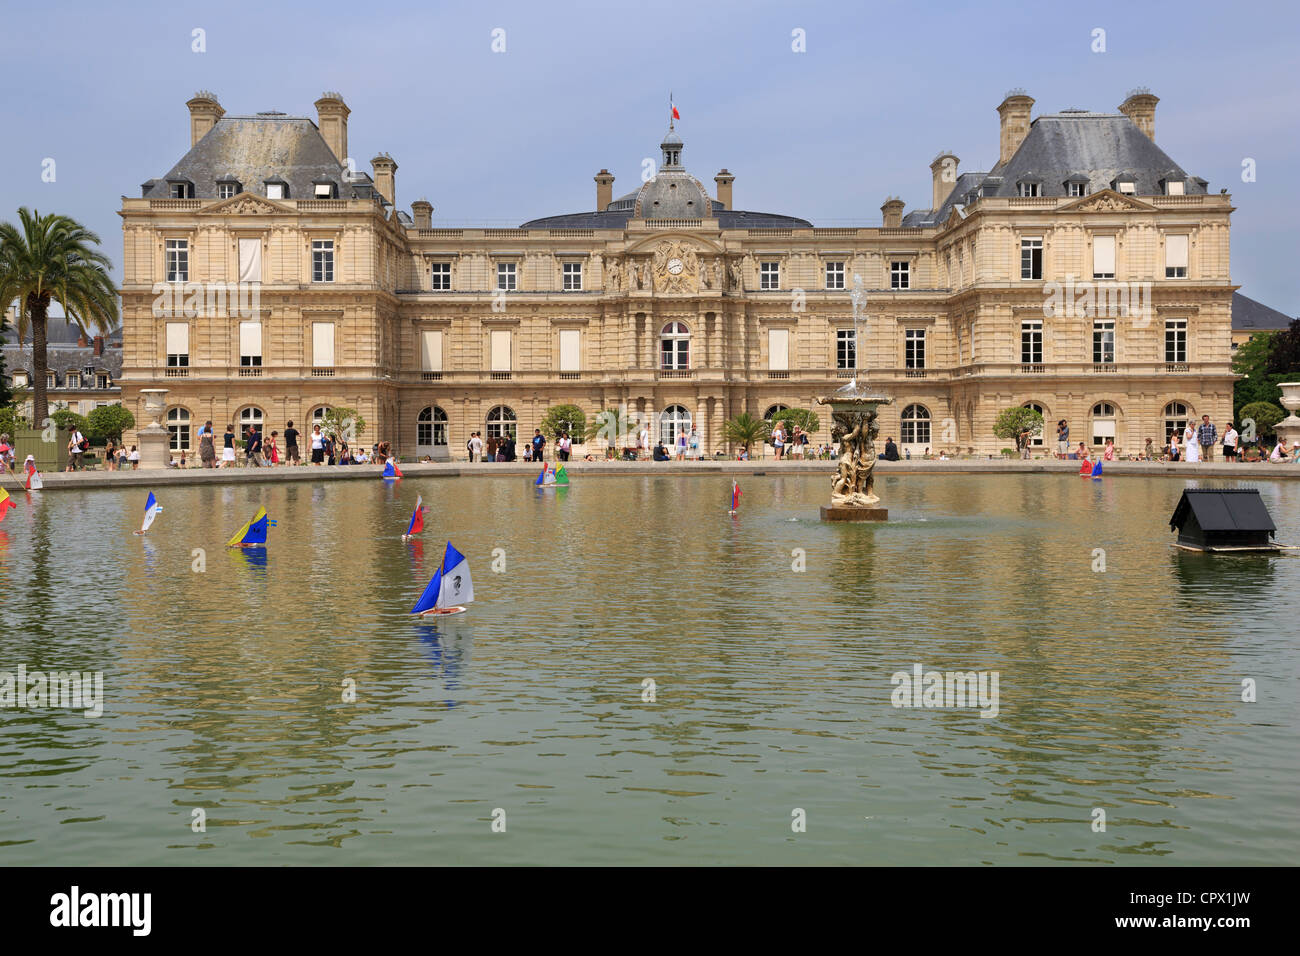 Les Jardins du Luxembourg, Paris. Bateaux à voile modèle sur le Grand Bassin avec le Palais du Luxembourg, le Sénat aujourd'hui, dans l'arrière-plan Banque D'Images